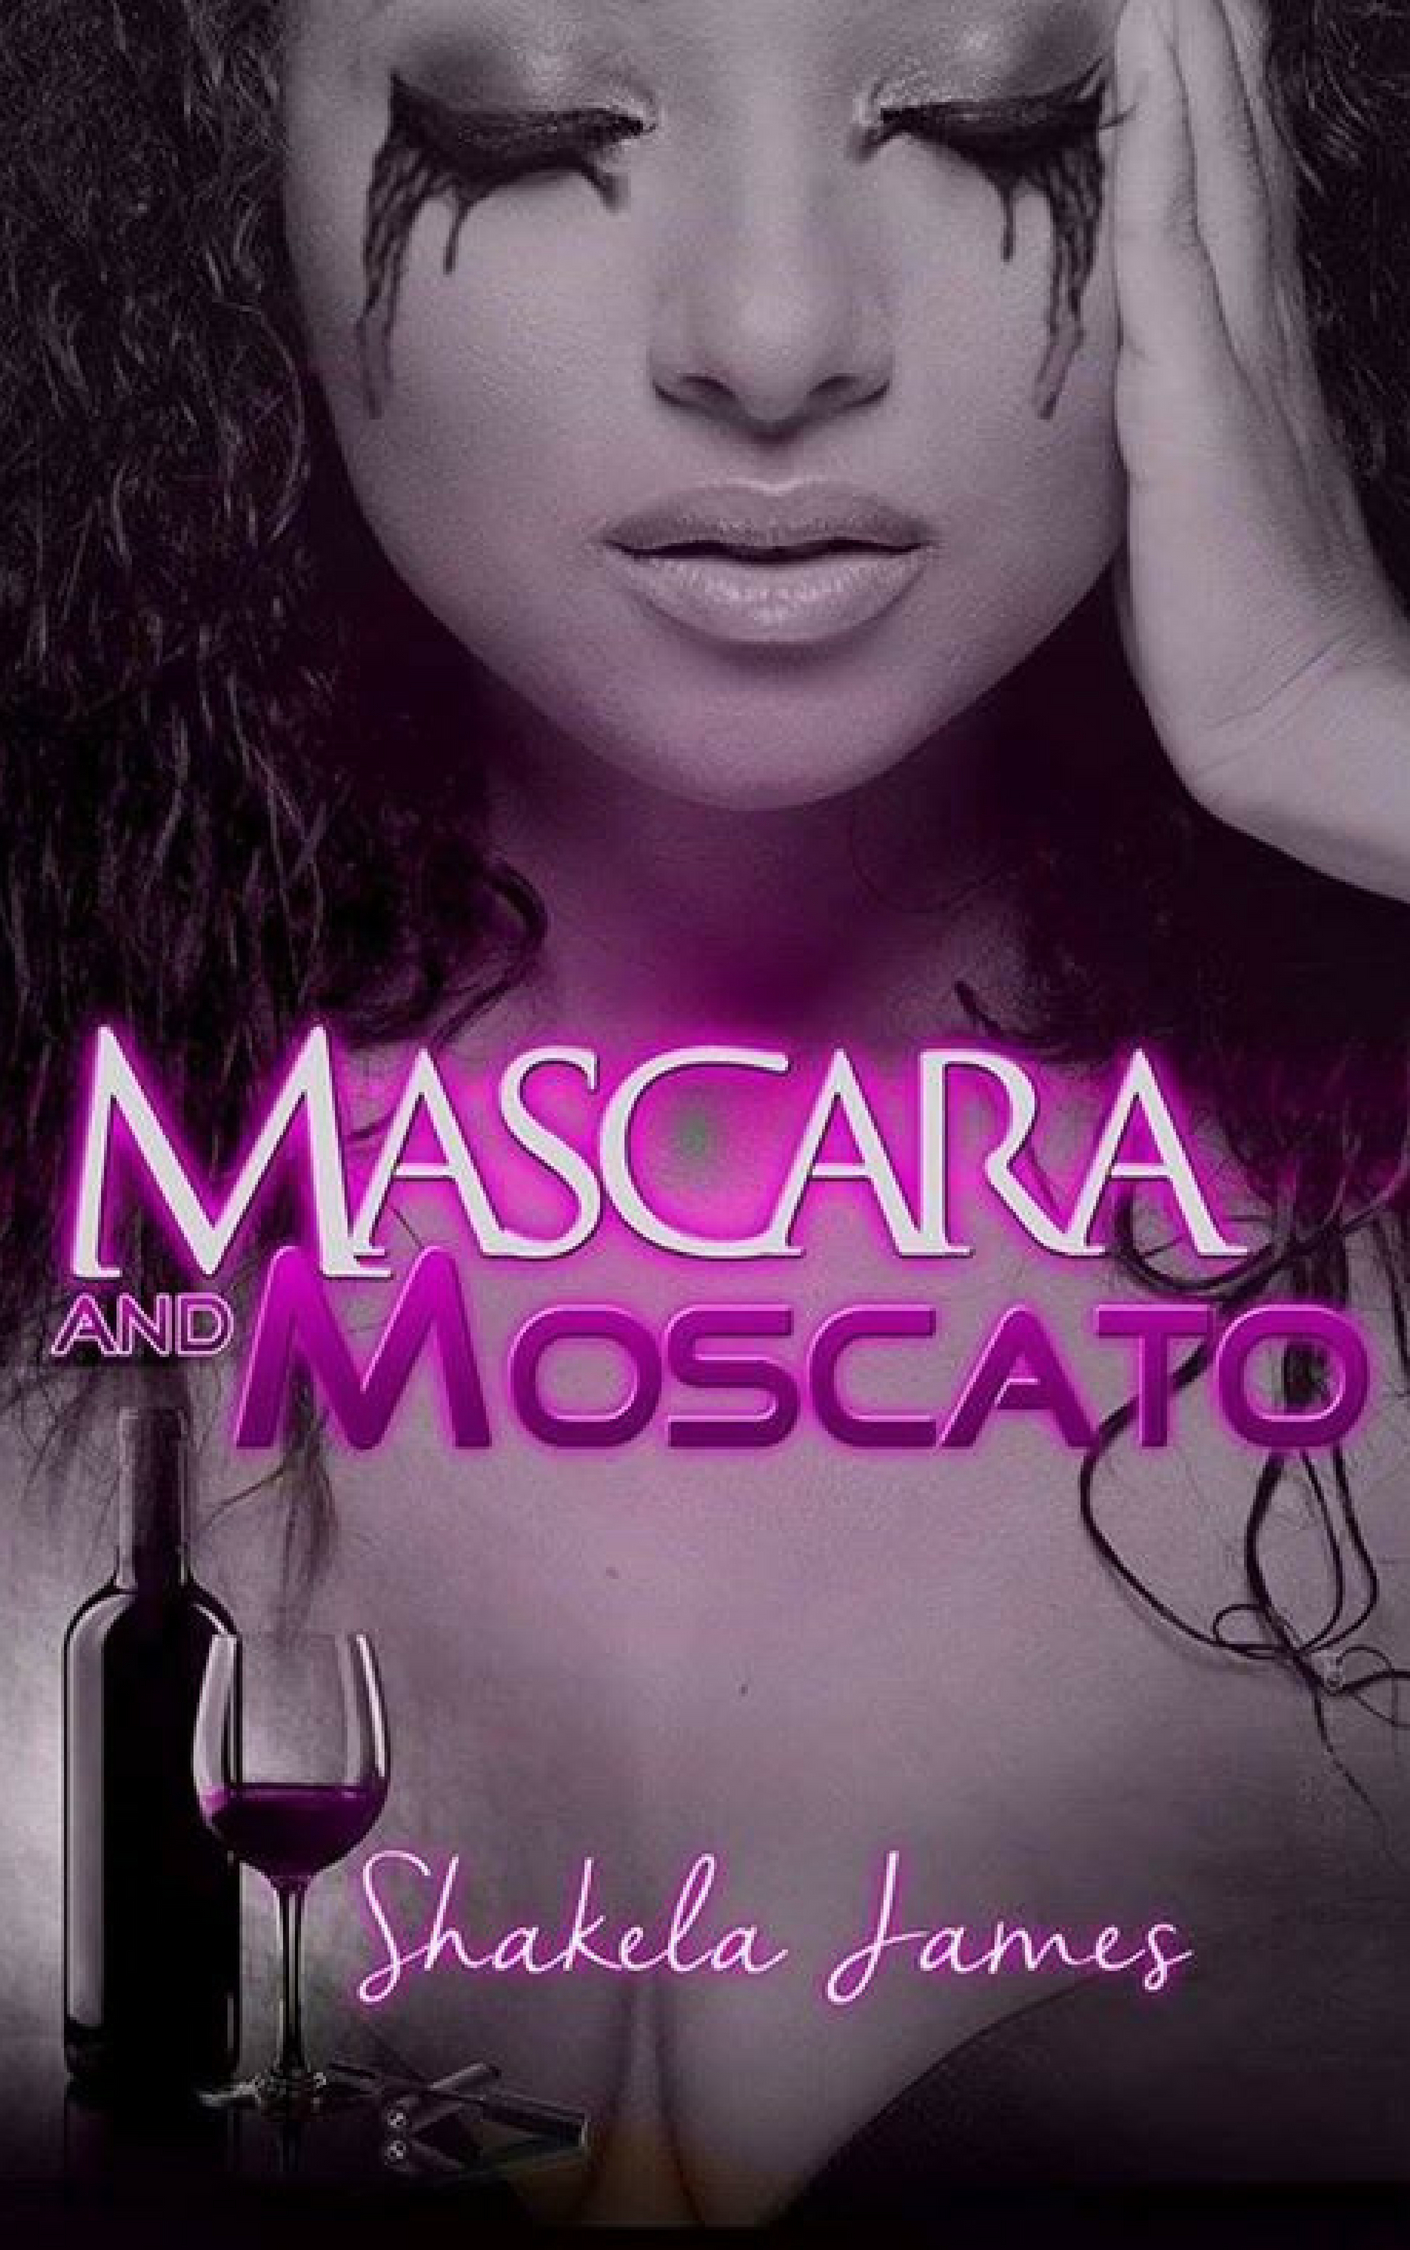 Mascara and Moscato